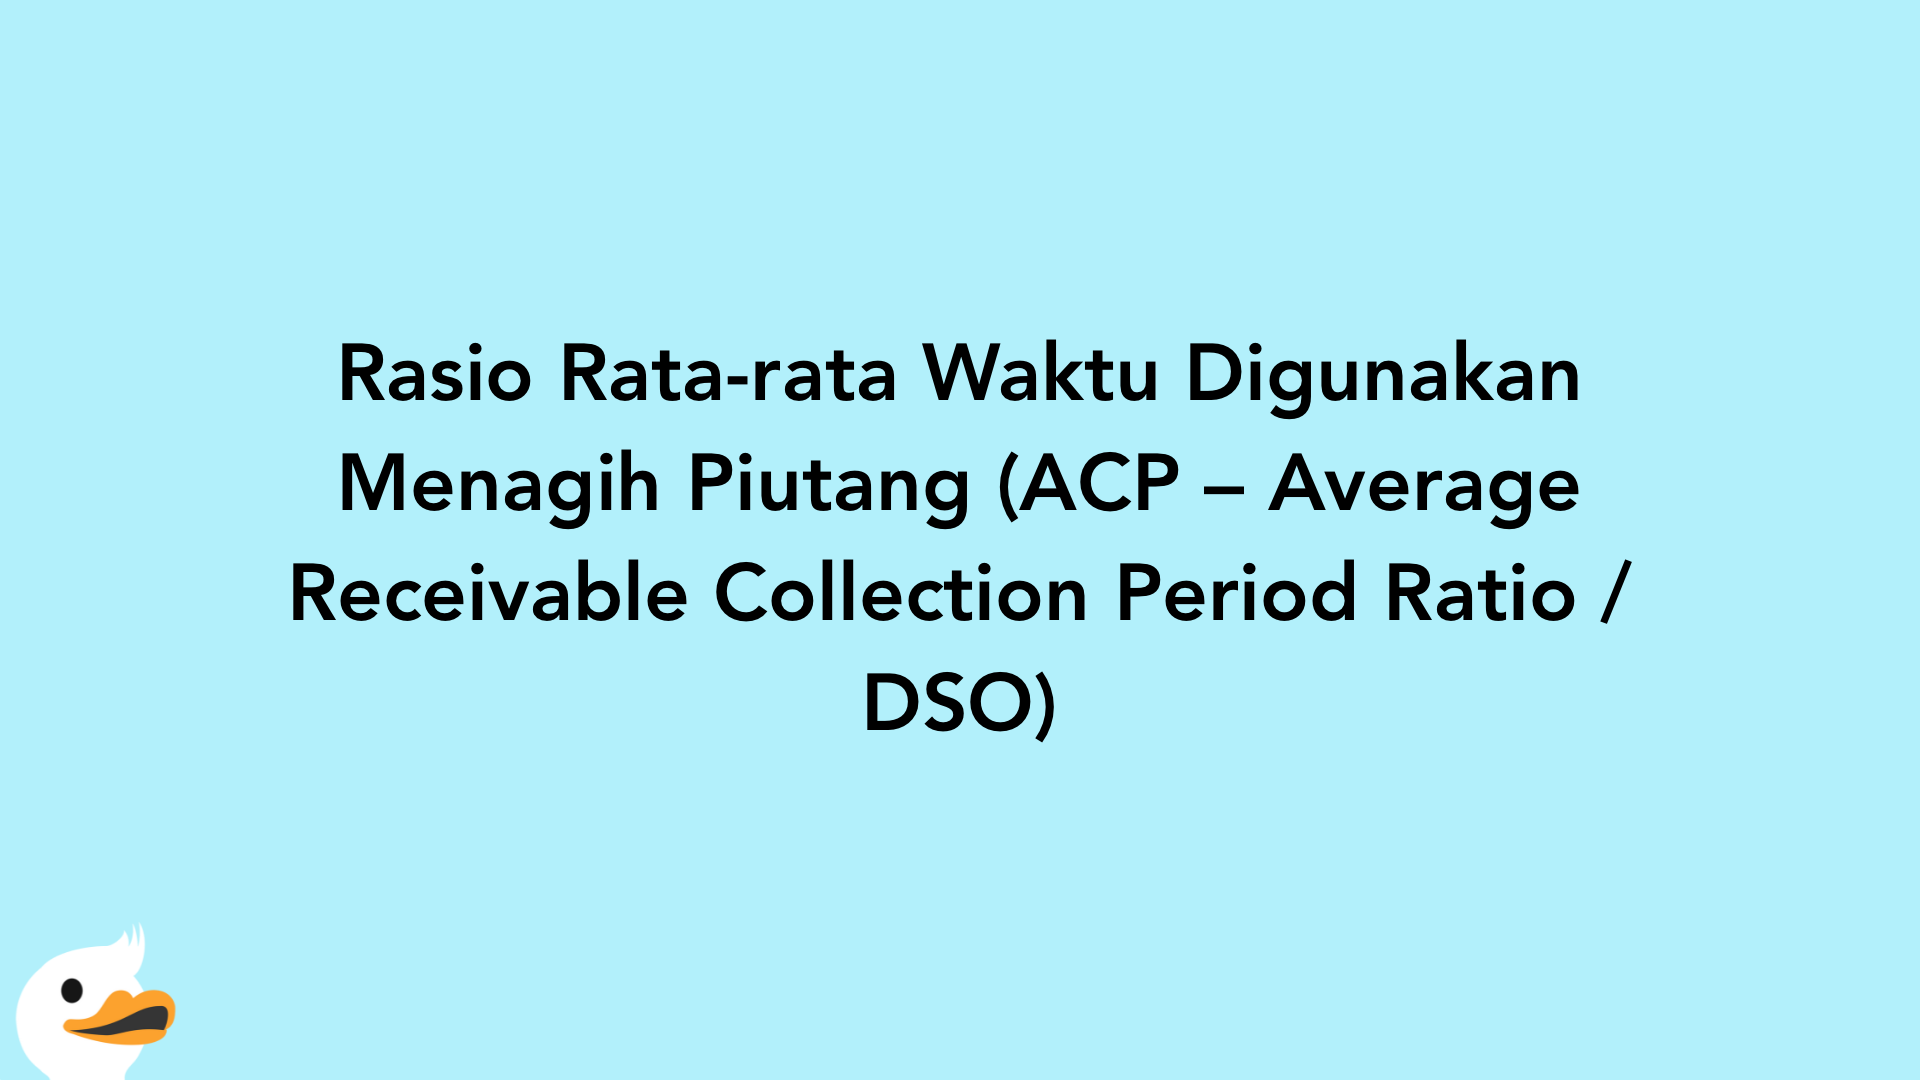 Rasio Rata-rata Waktu Digunakan Menagih Piutang (ACP – Average Receivable Collection Period Ratio / DSO)